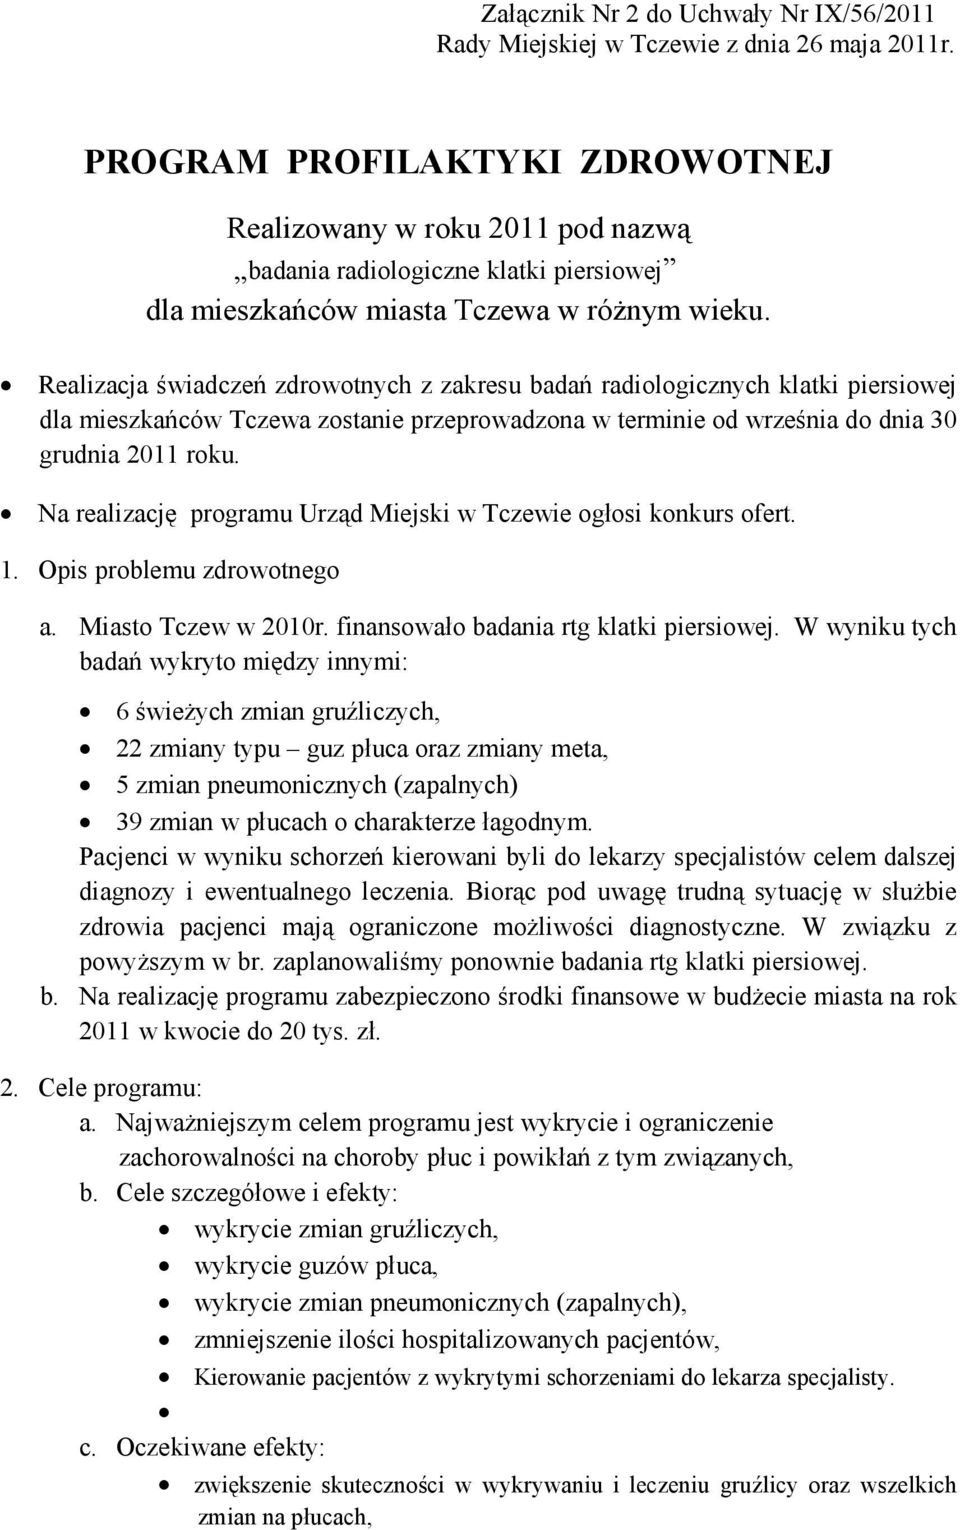 Na realizację programu Urząd Miejski w Tczewie ogłosi konkurs ofert. 1. Opis problemu zdrowotnego a. Miasto Tczew w 2010r. finansowało badania rtg klatki piersiowej.